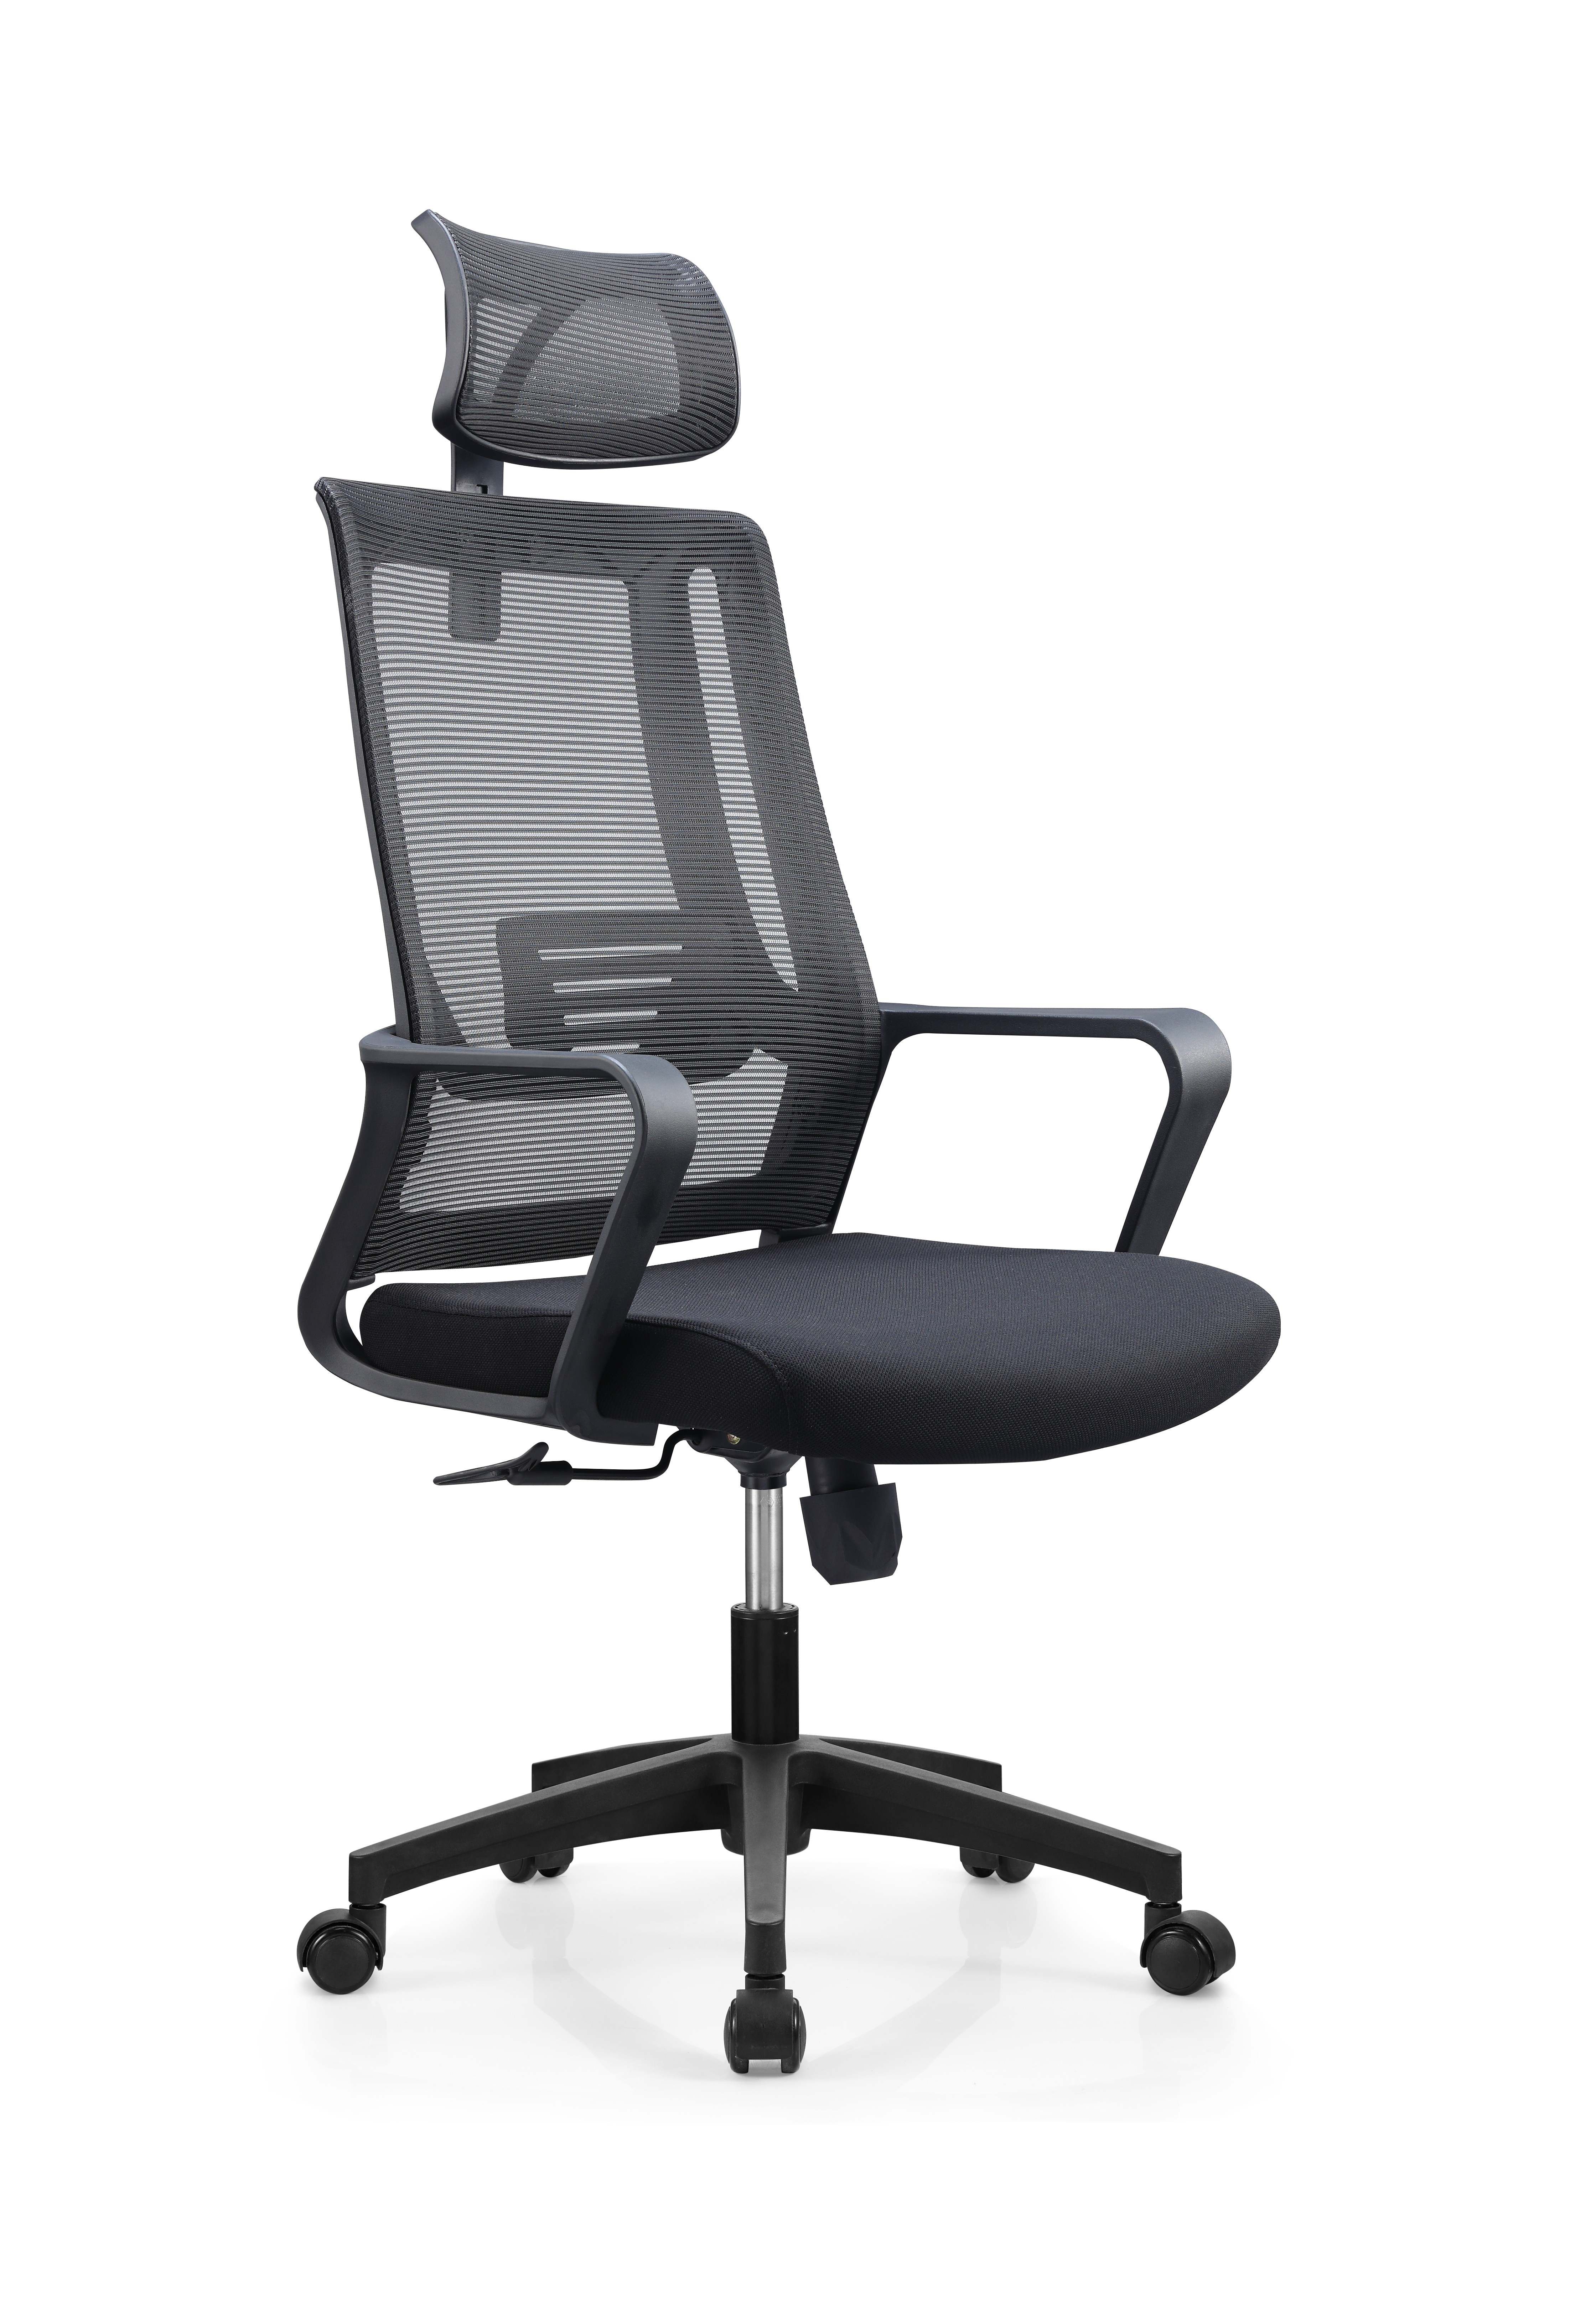 Newcity 530A厂家直销网椅质量保证价格网椅高品质现代行政网椅批发设计电脑网椅供应商中国佛山